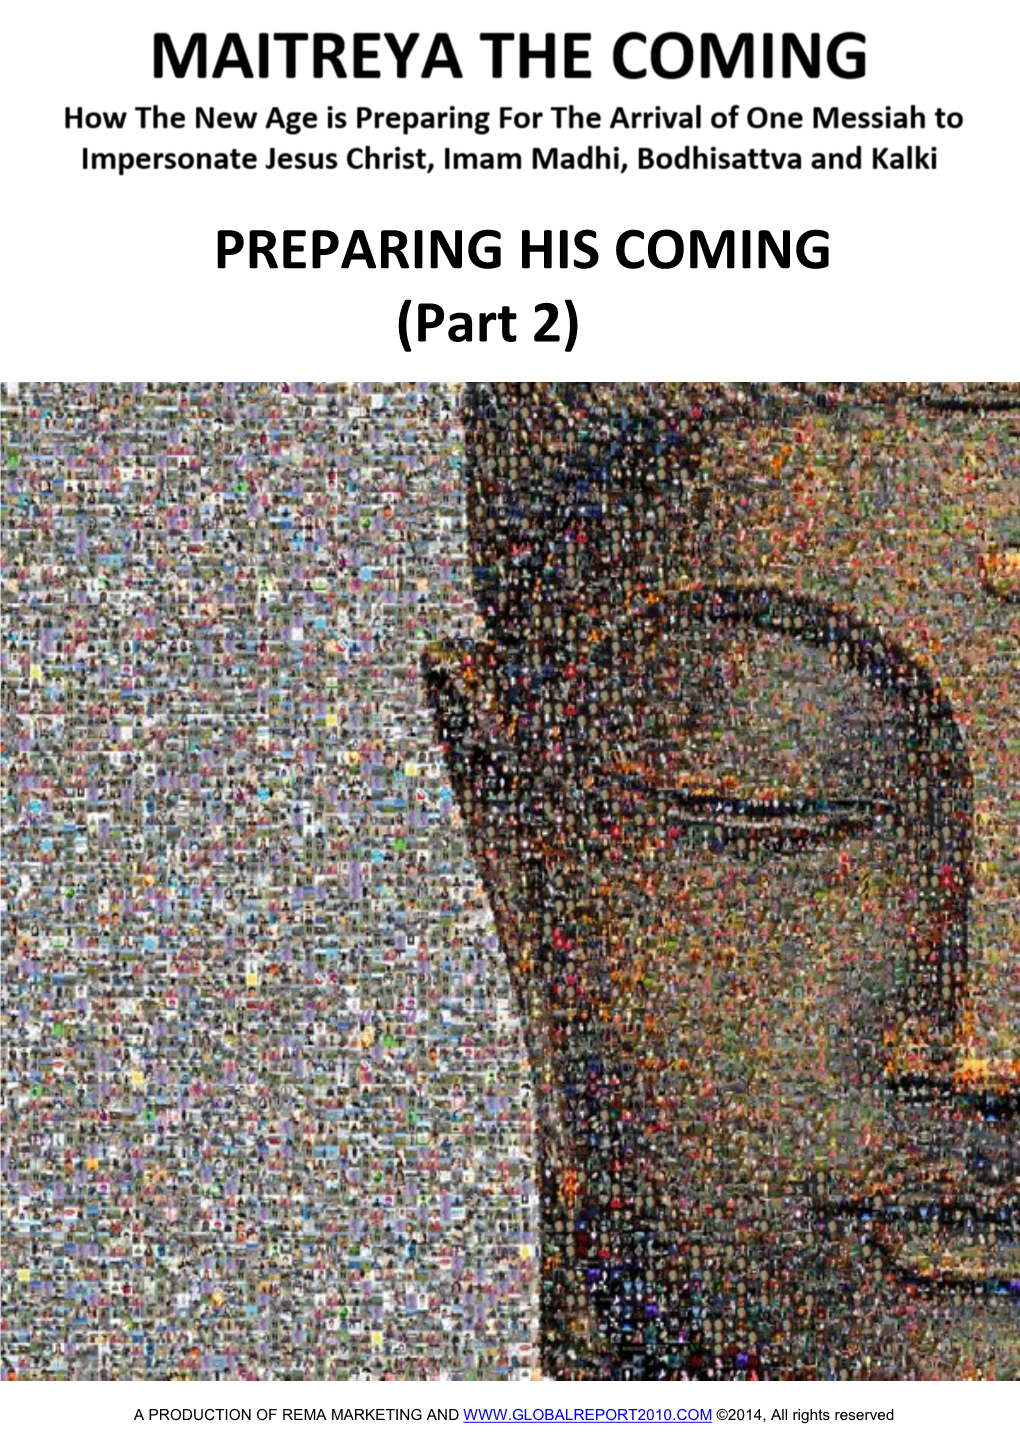 PREPARING HIS COMING (Part 2)